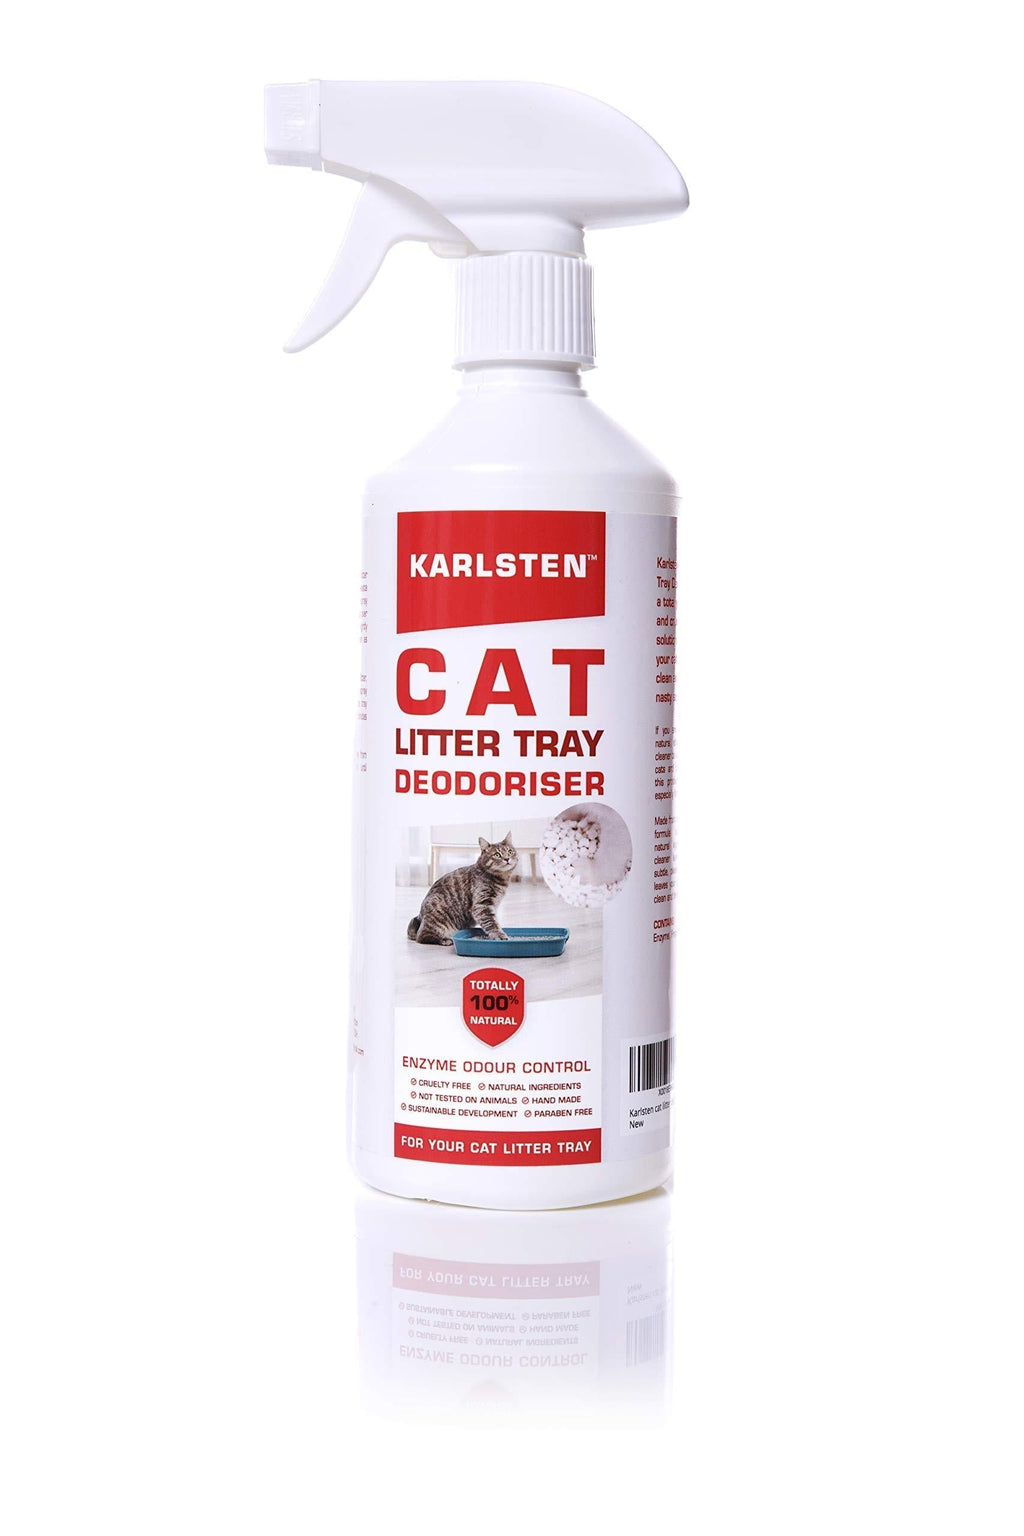 Karlsten Cat Litter Spray Deodorizer - 100% Bio-Based, Destroys bacteria,Fresh Lemon Fragrance Odour Eliminator & Neutralizer - Extends Cat Litter Life & Absorbs Odours - PawsPlanet Australia